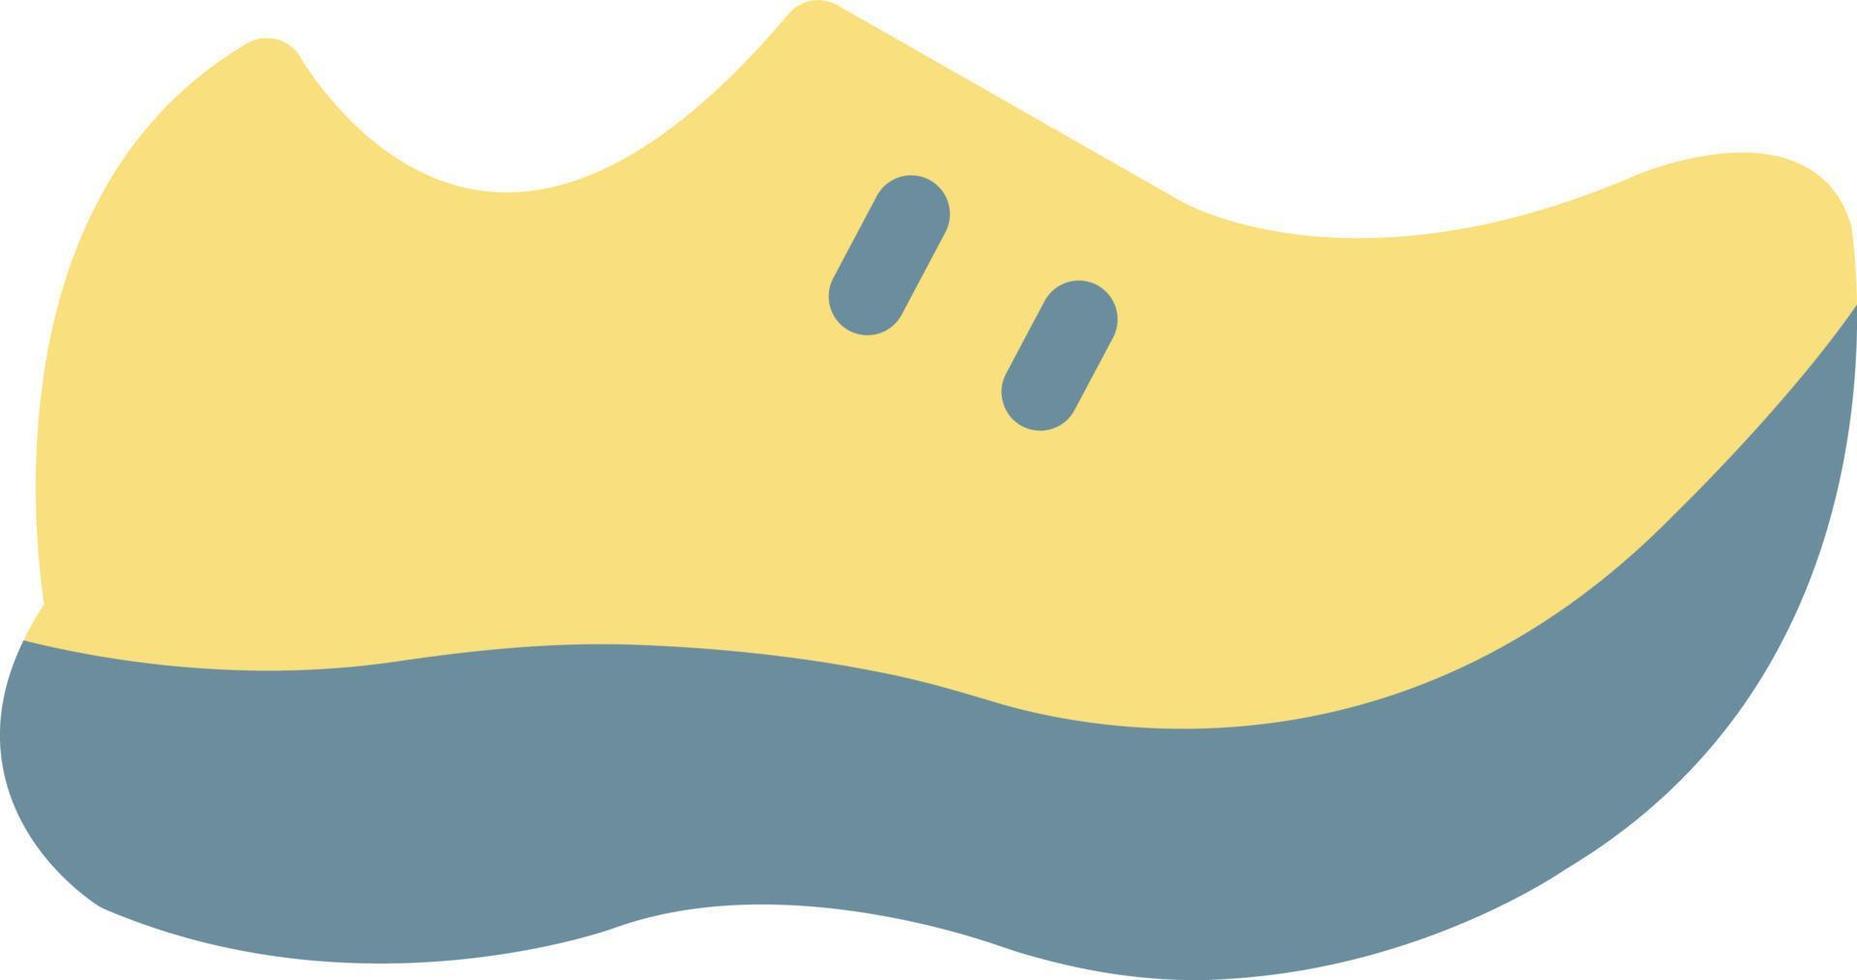 chaussures de sport illustration vectorielle sur fond.symboles de qualité premium.icônes vectorielles pour le concept et la conception graphique. vecteur